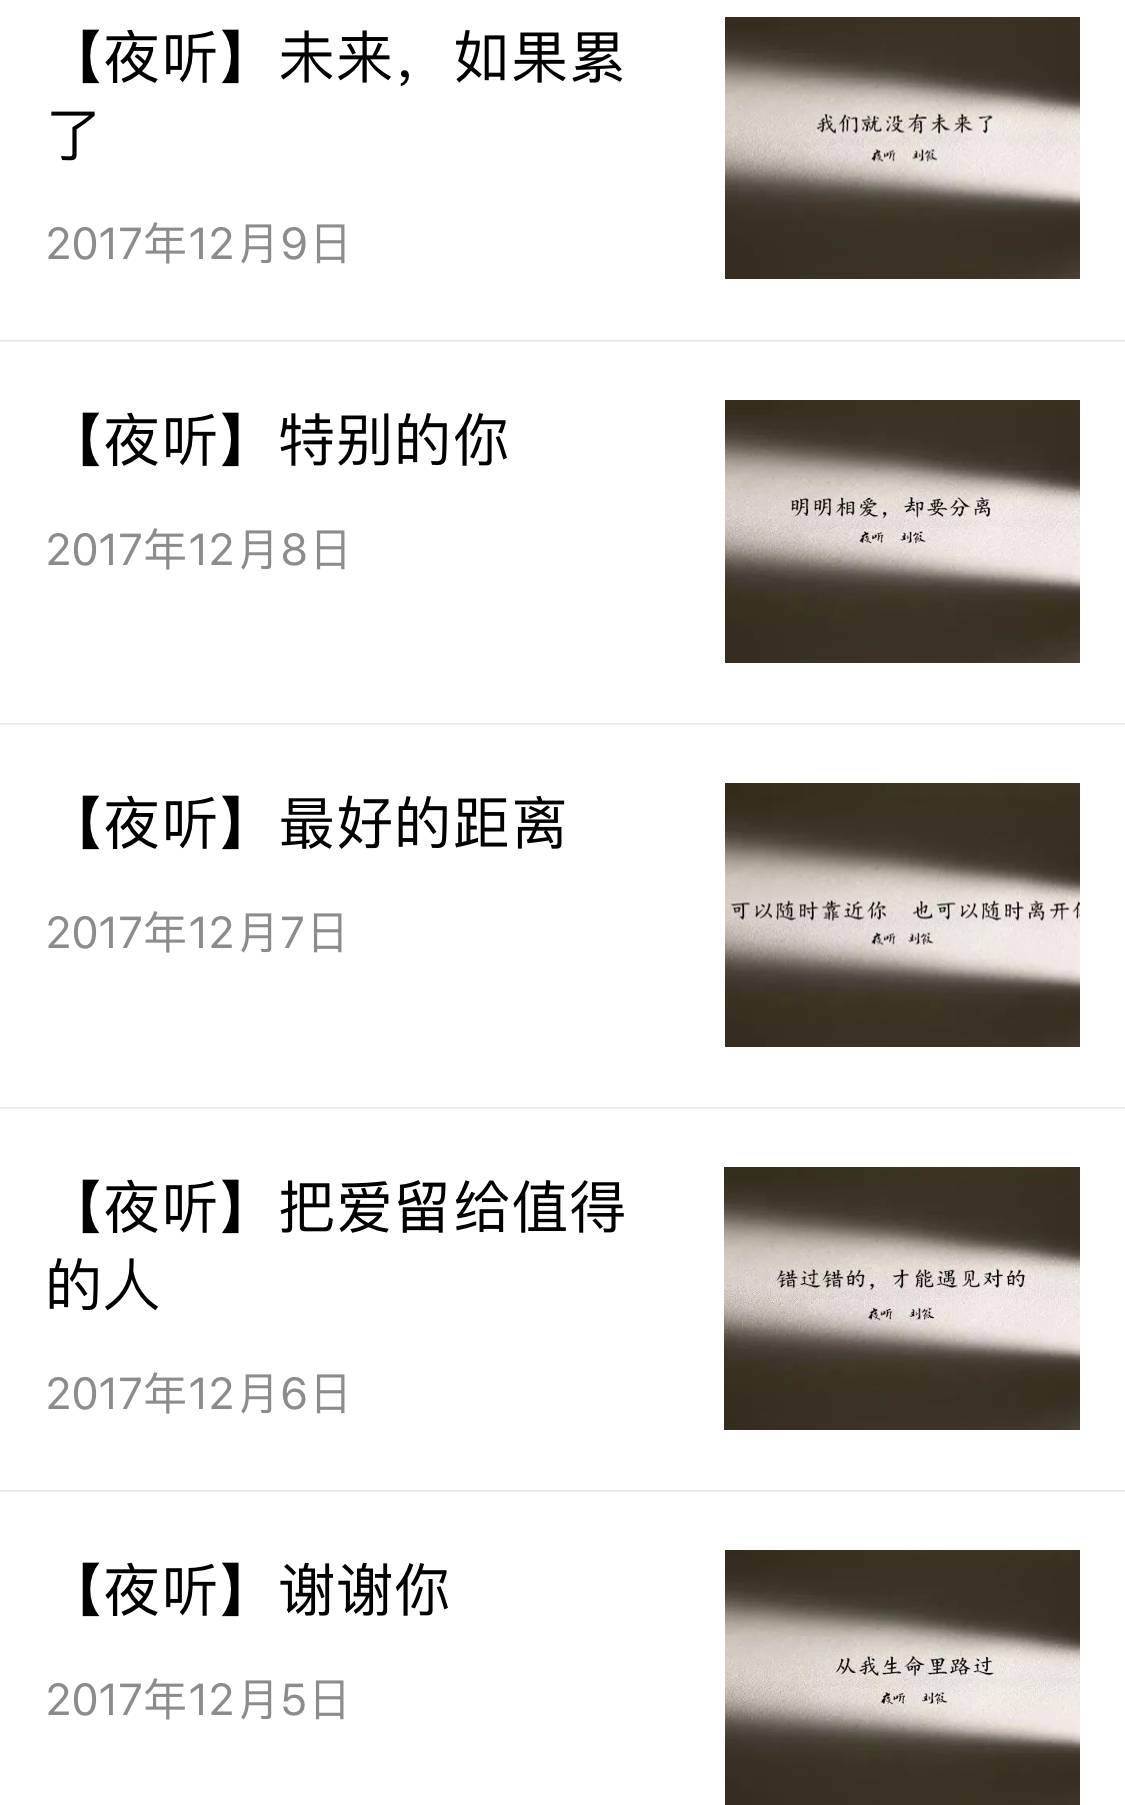 [Fihainoana alina] Kaonty ofisialy WeChat No. 9